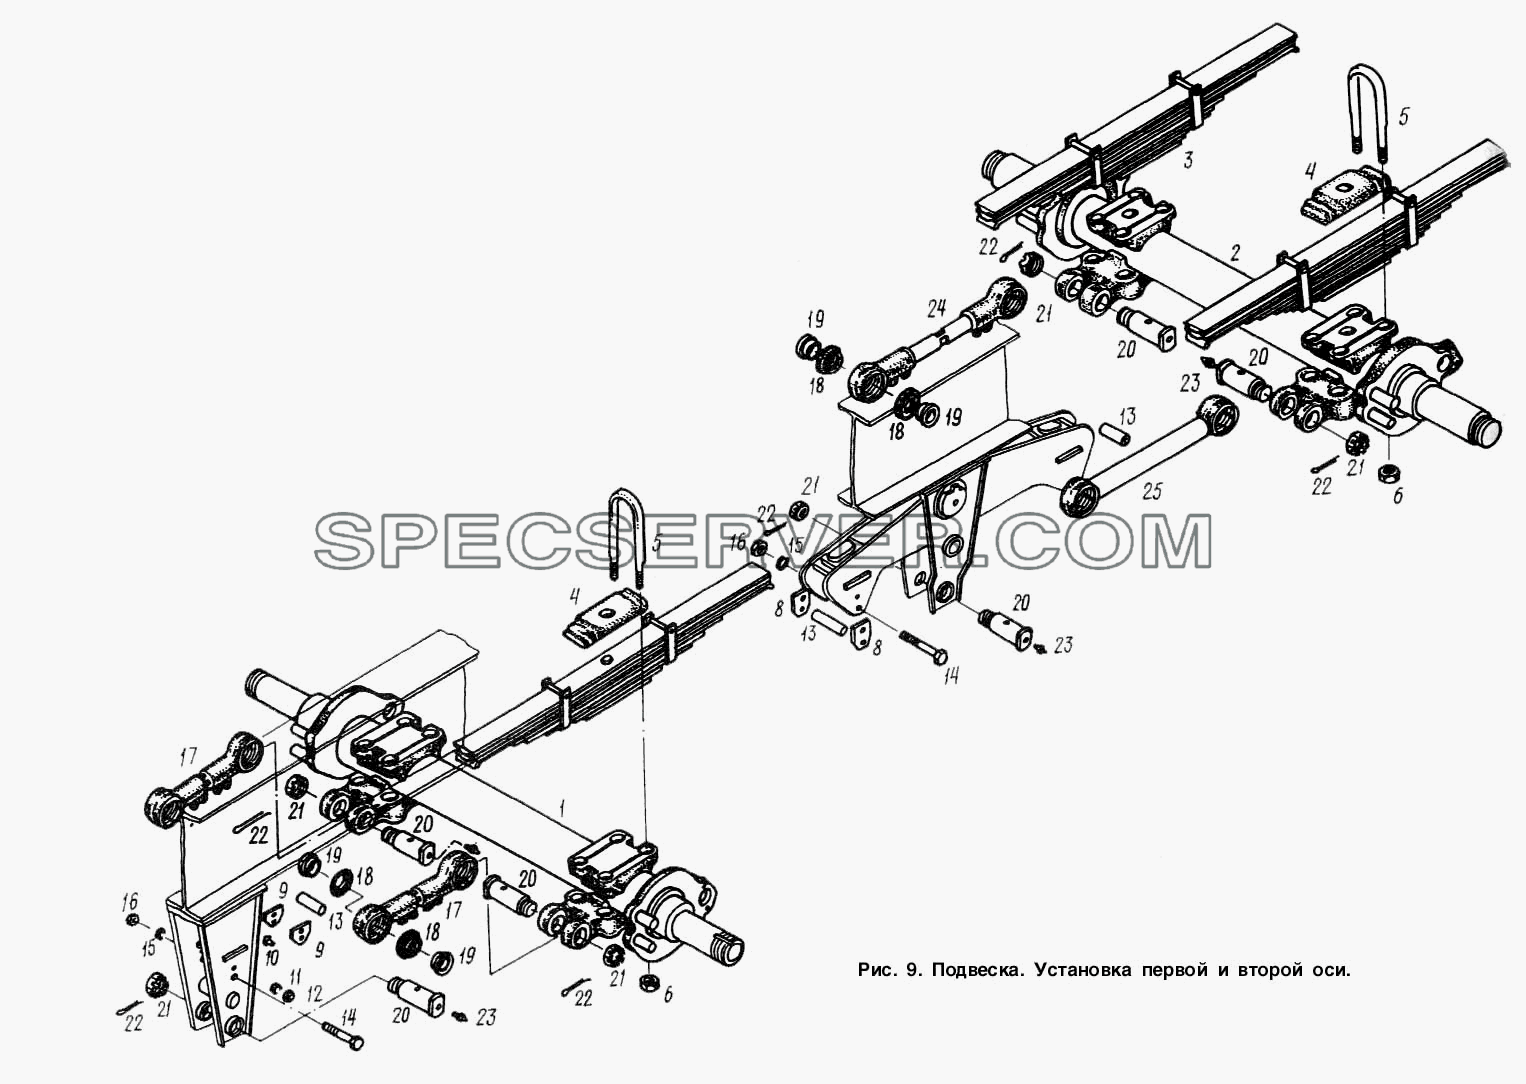 Подвеска. Установка первой и второй оси для МАЗ-9758 (список запасных частей)